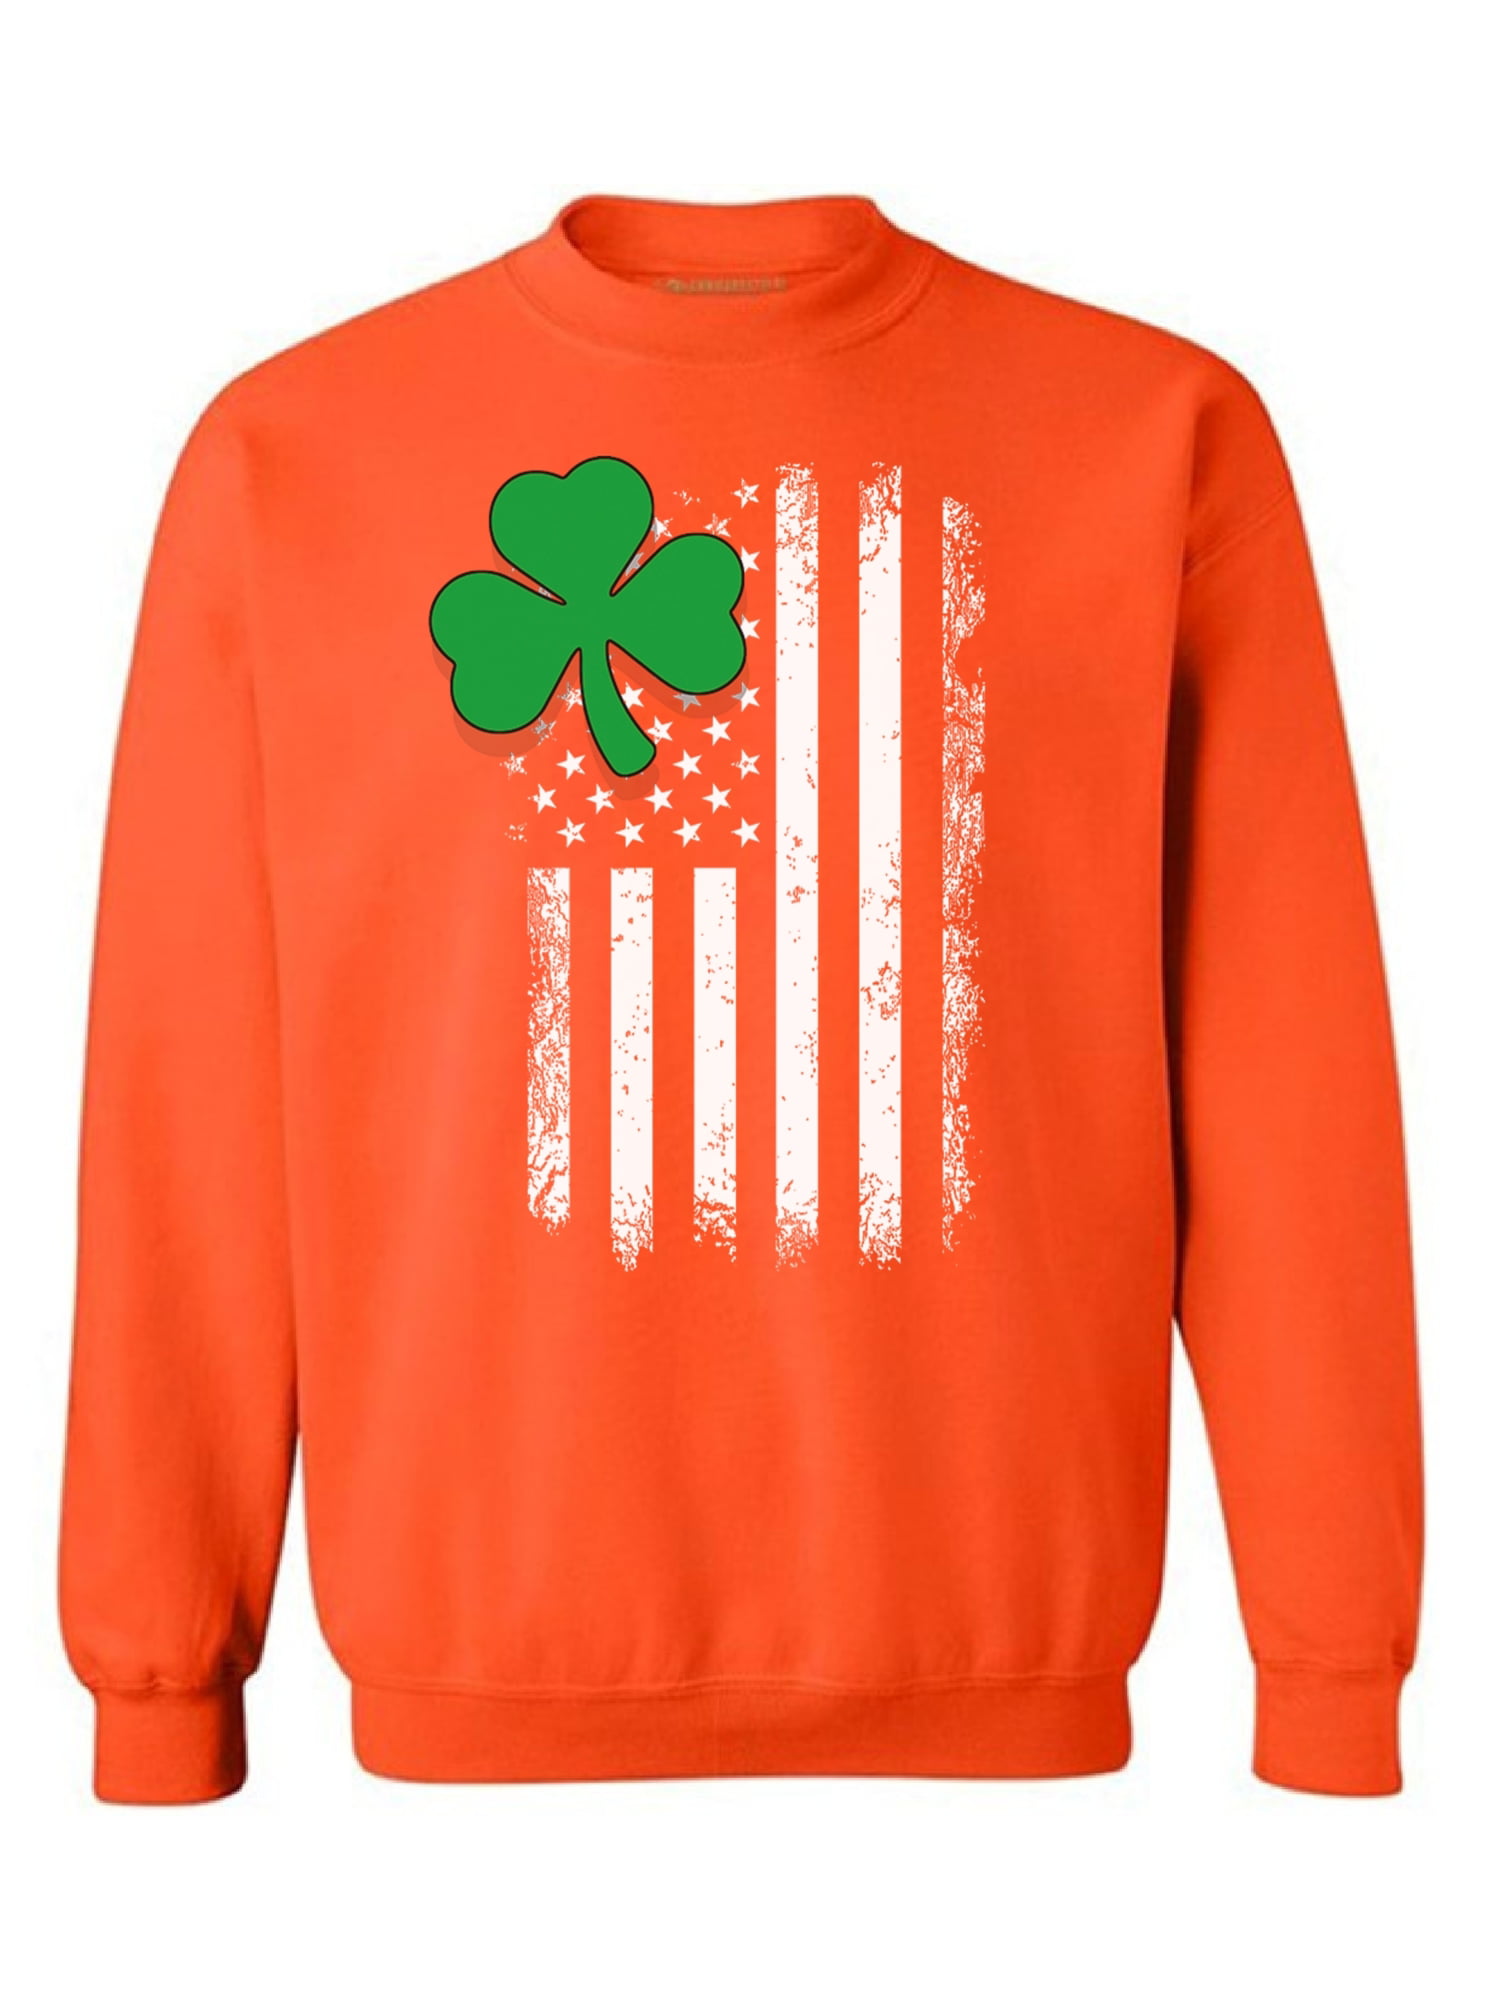 Awkward Styles - Awkward Styles Irish American Sweatshirt Shamrock ...